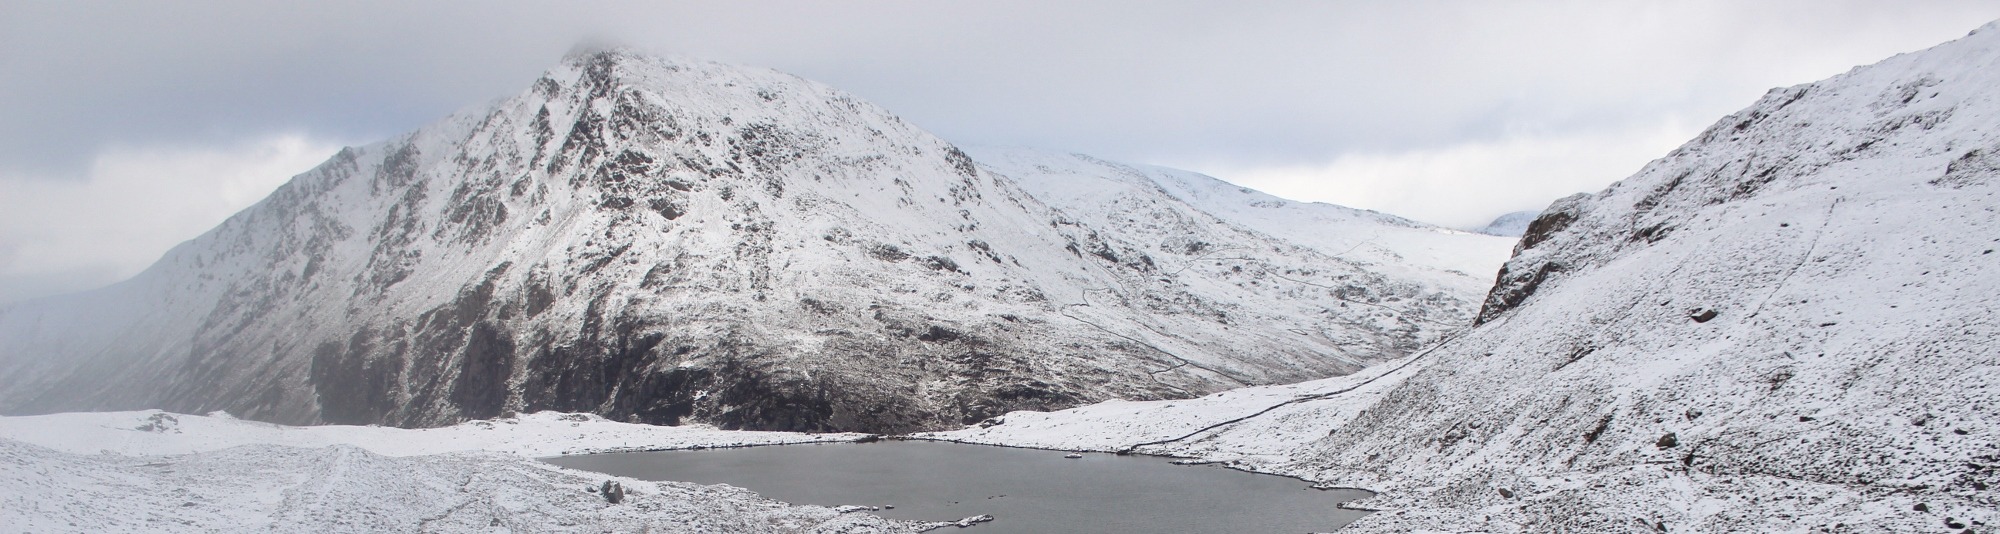 Llyn Idwal in winter